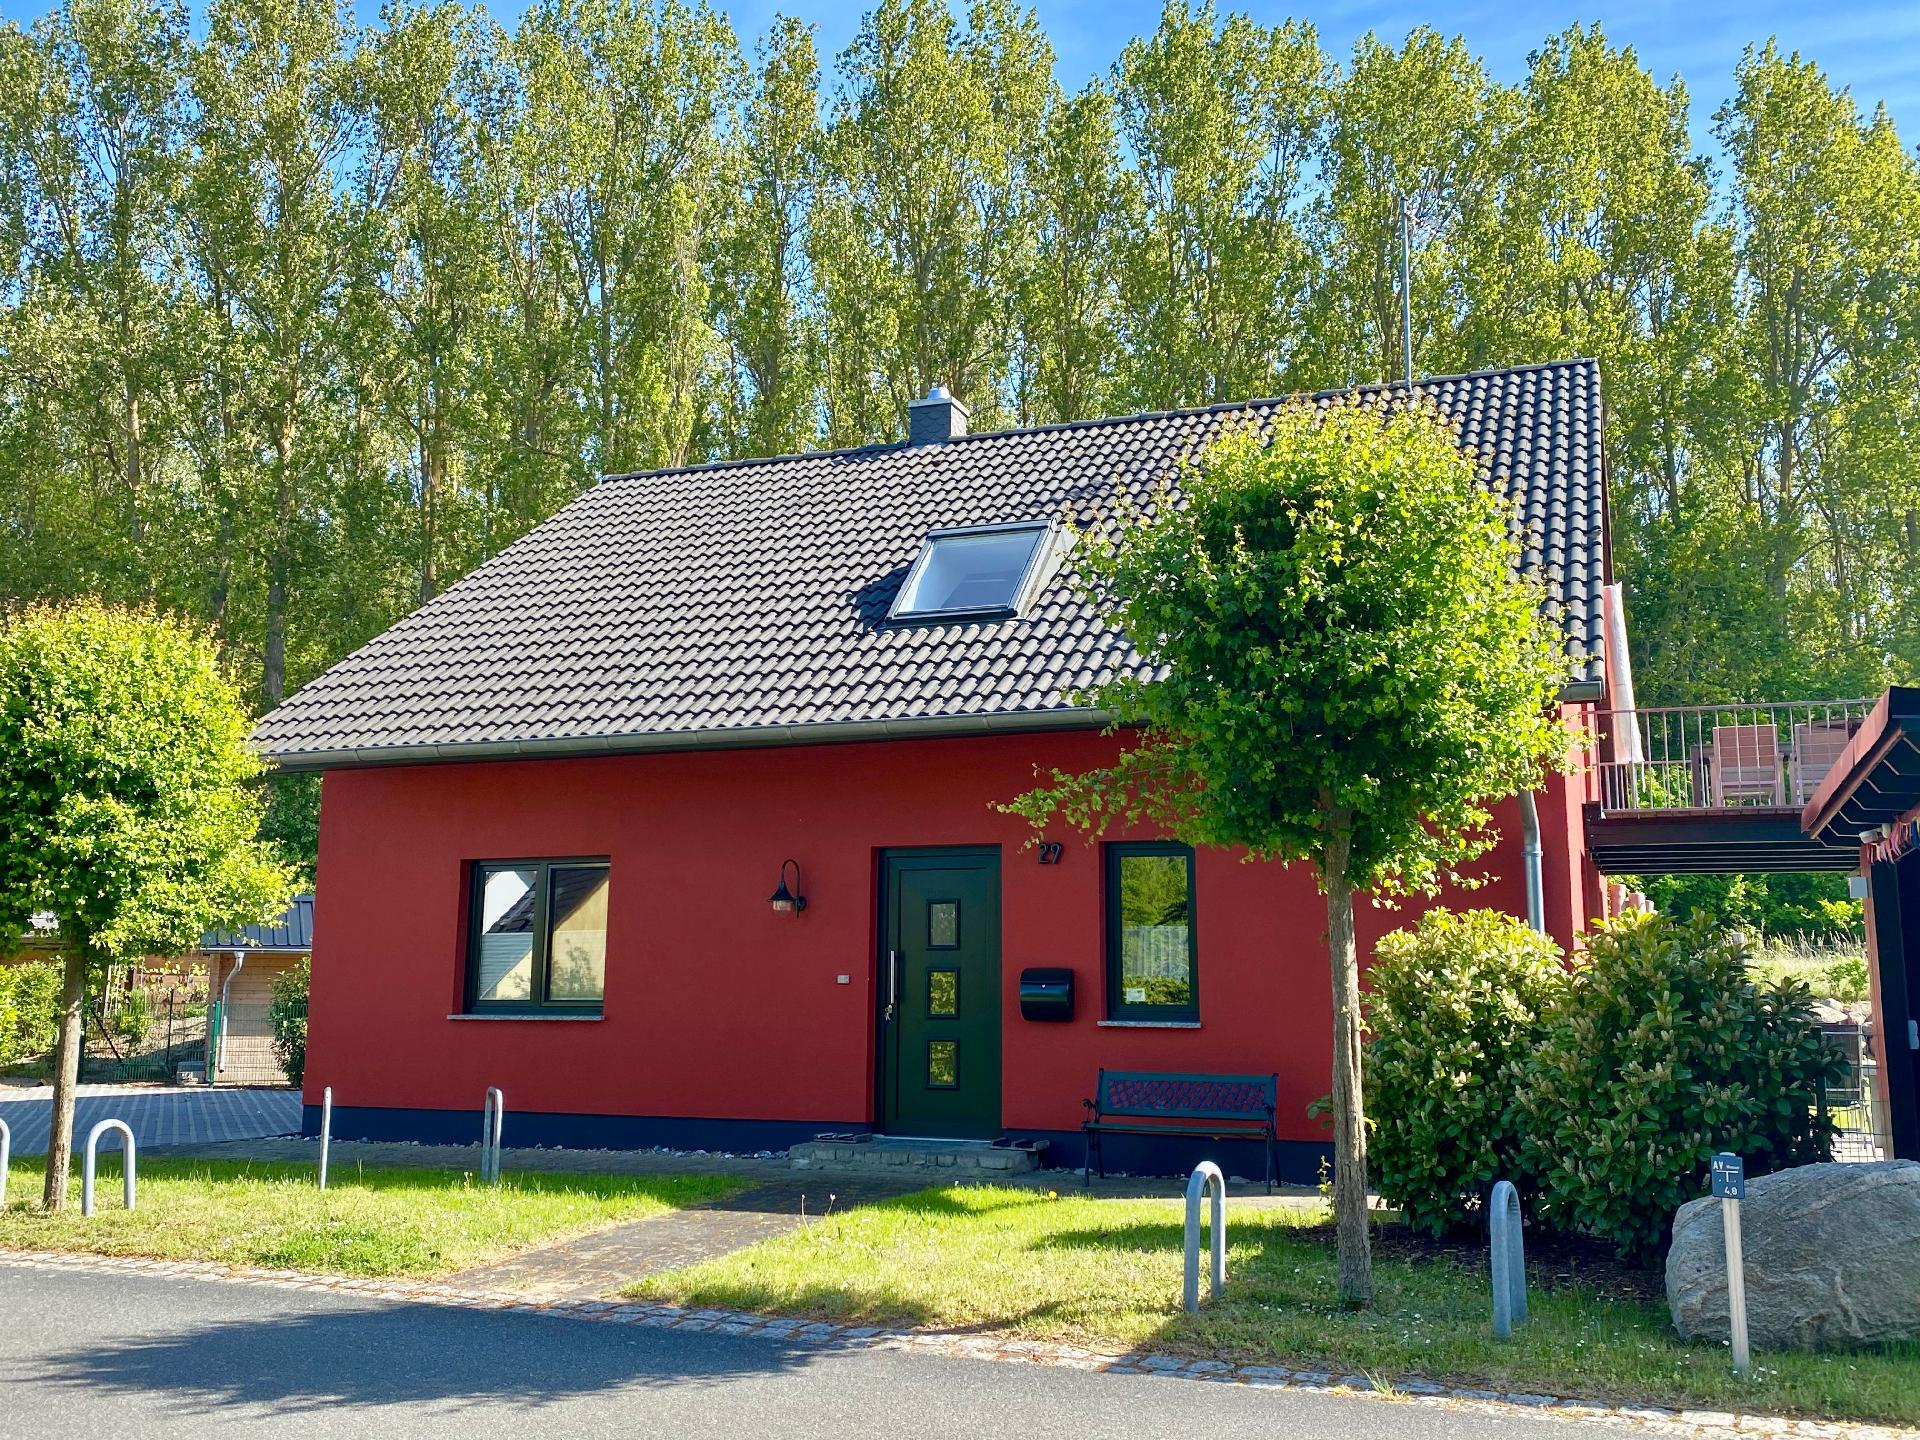 Ferienwohnung für 5 Personen ca. 80 m² i Ferienhaus in Deutschland